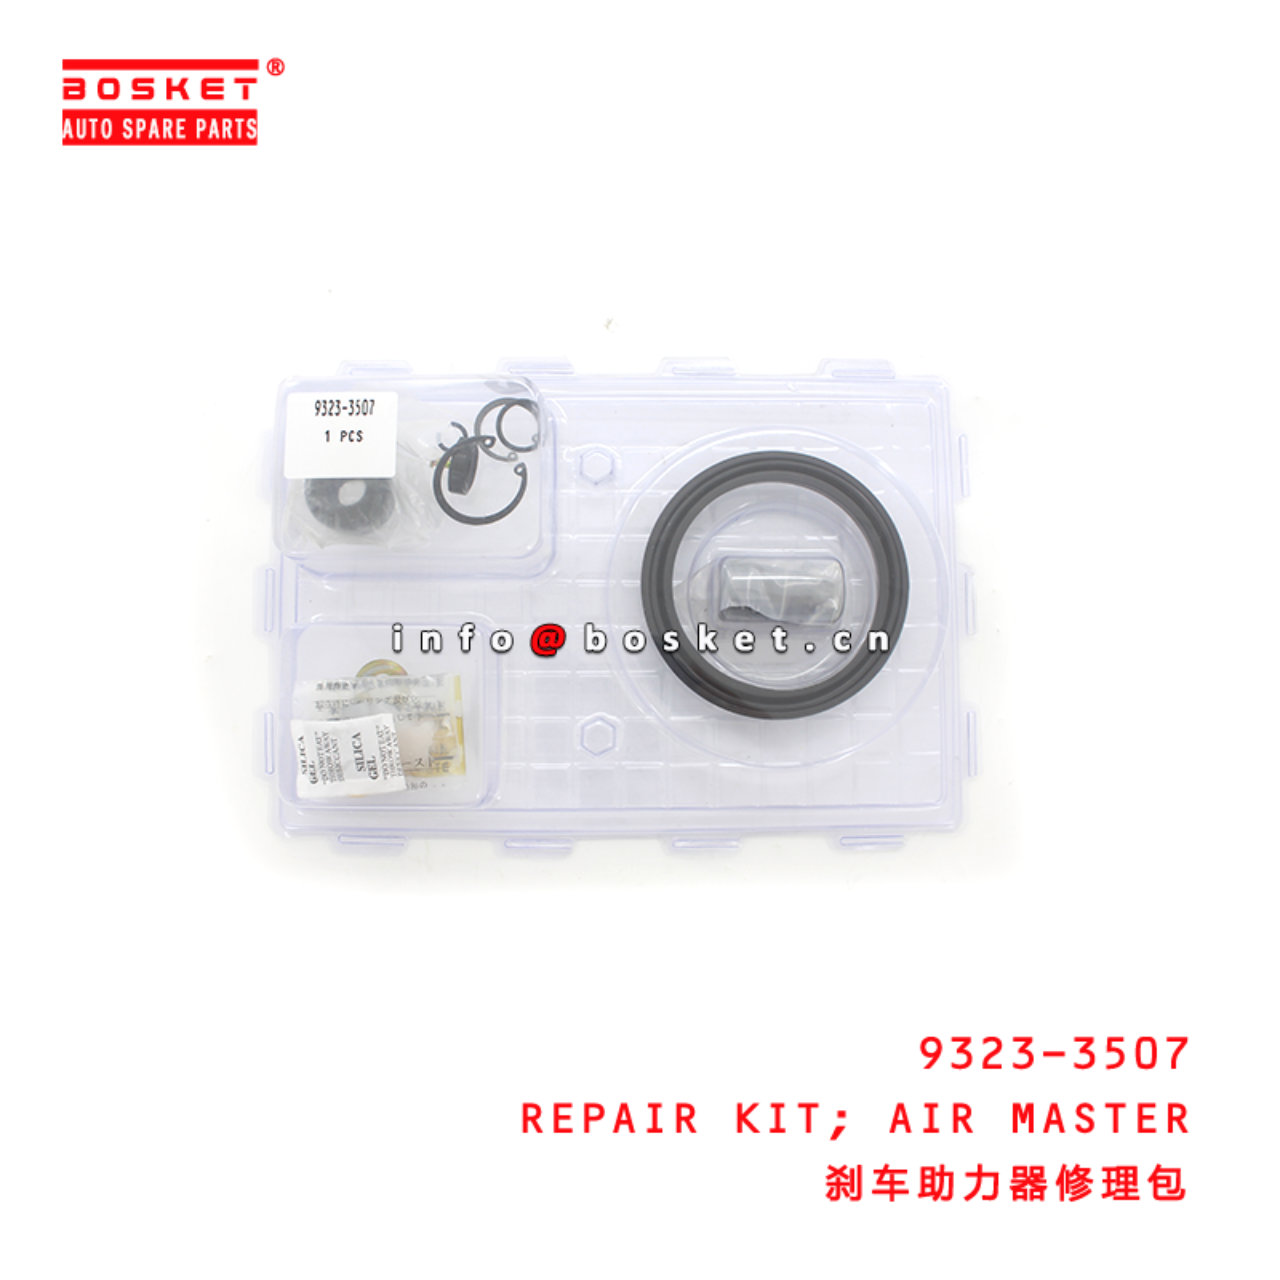 9323-3507 Air Master Repair Kit Suitable for ISUZU